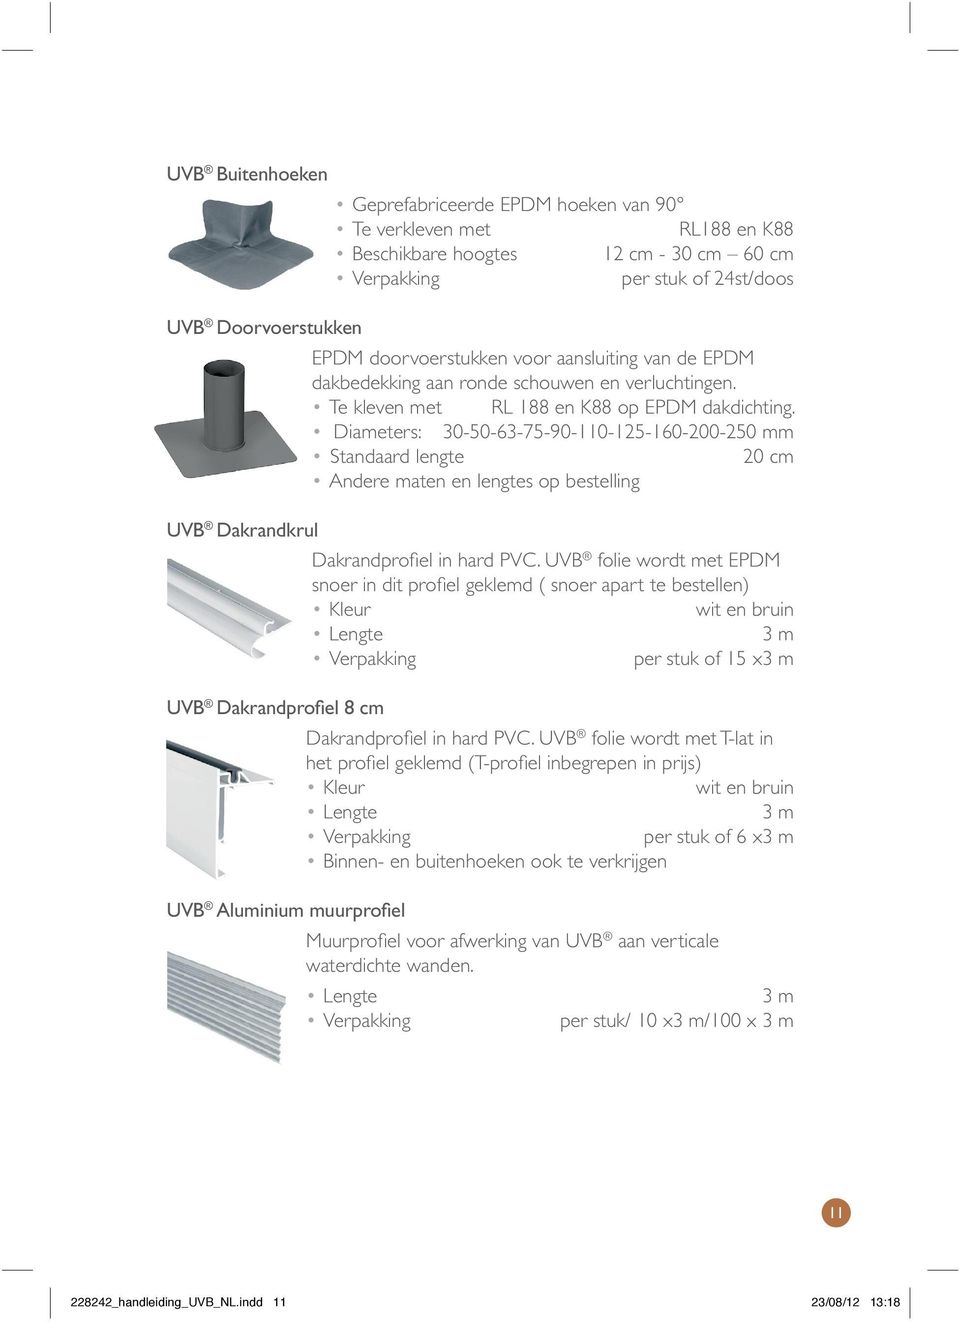 Diameters: 30-50-63-75-90-110-125-160-200-250 mm standaard lengte 20 cm andere maten en lengtes op bestelling Dakrandprofiel in hard PVC.